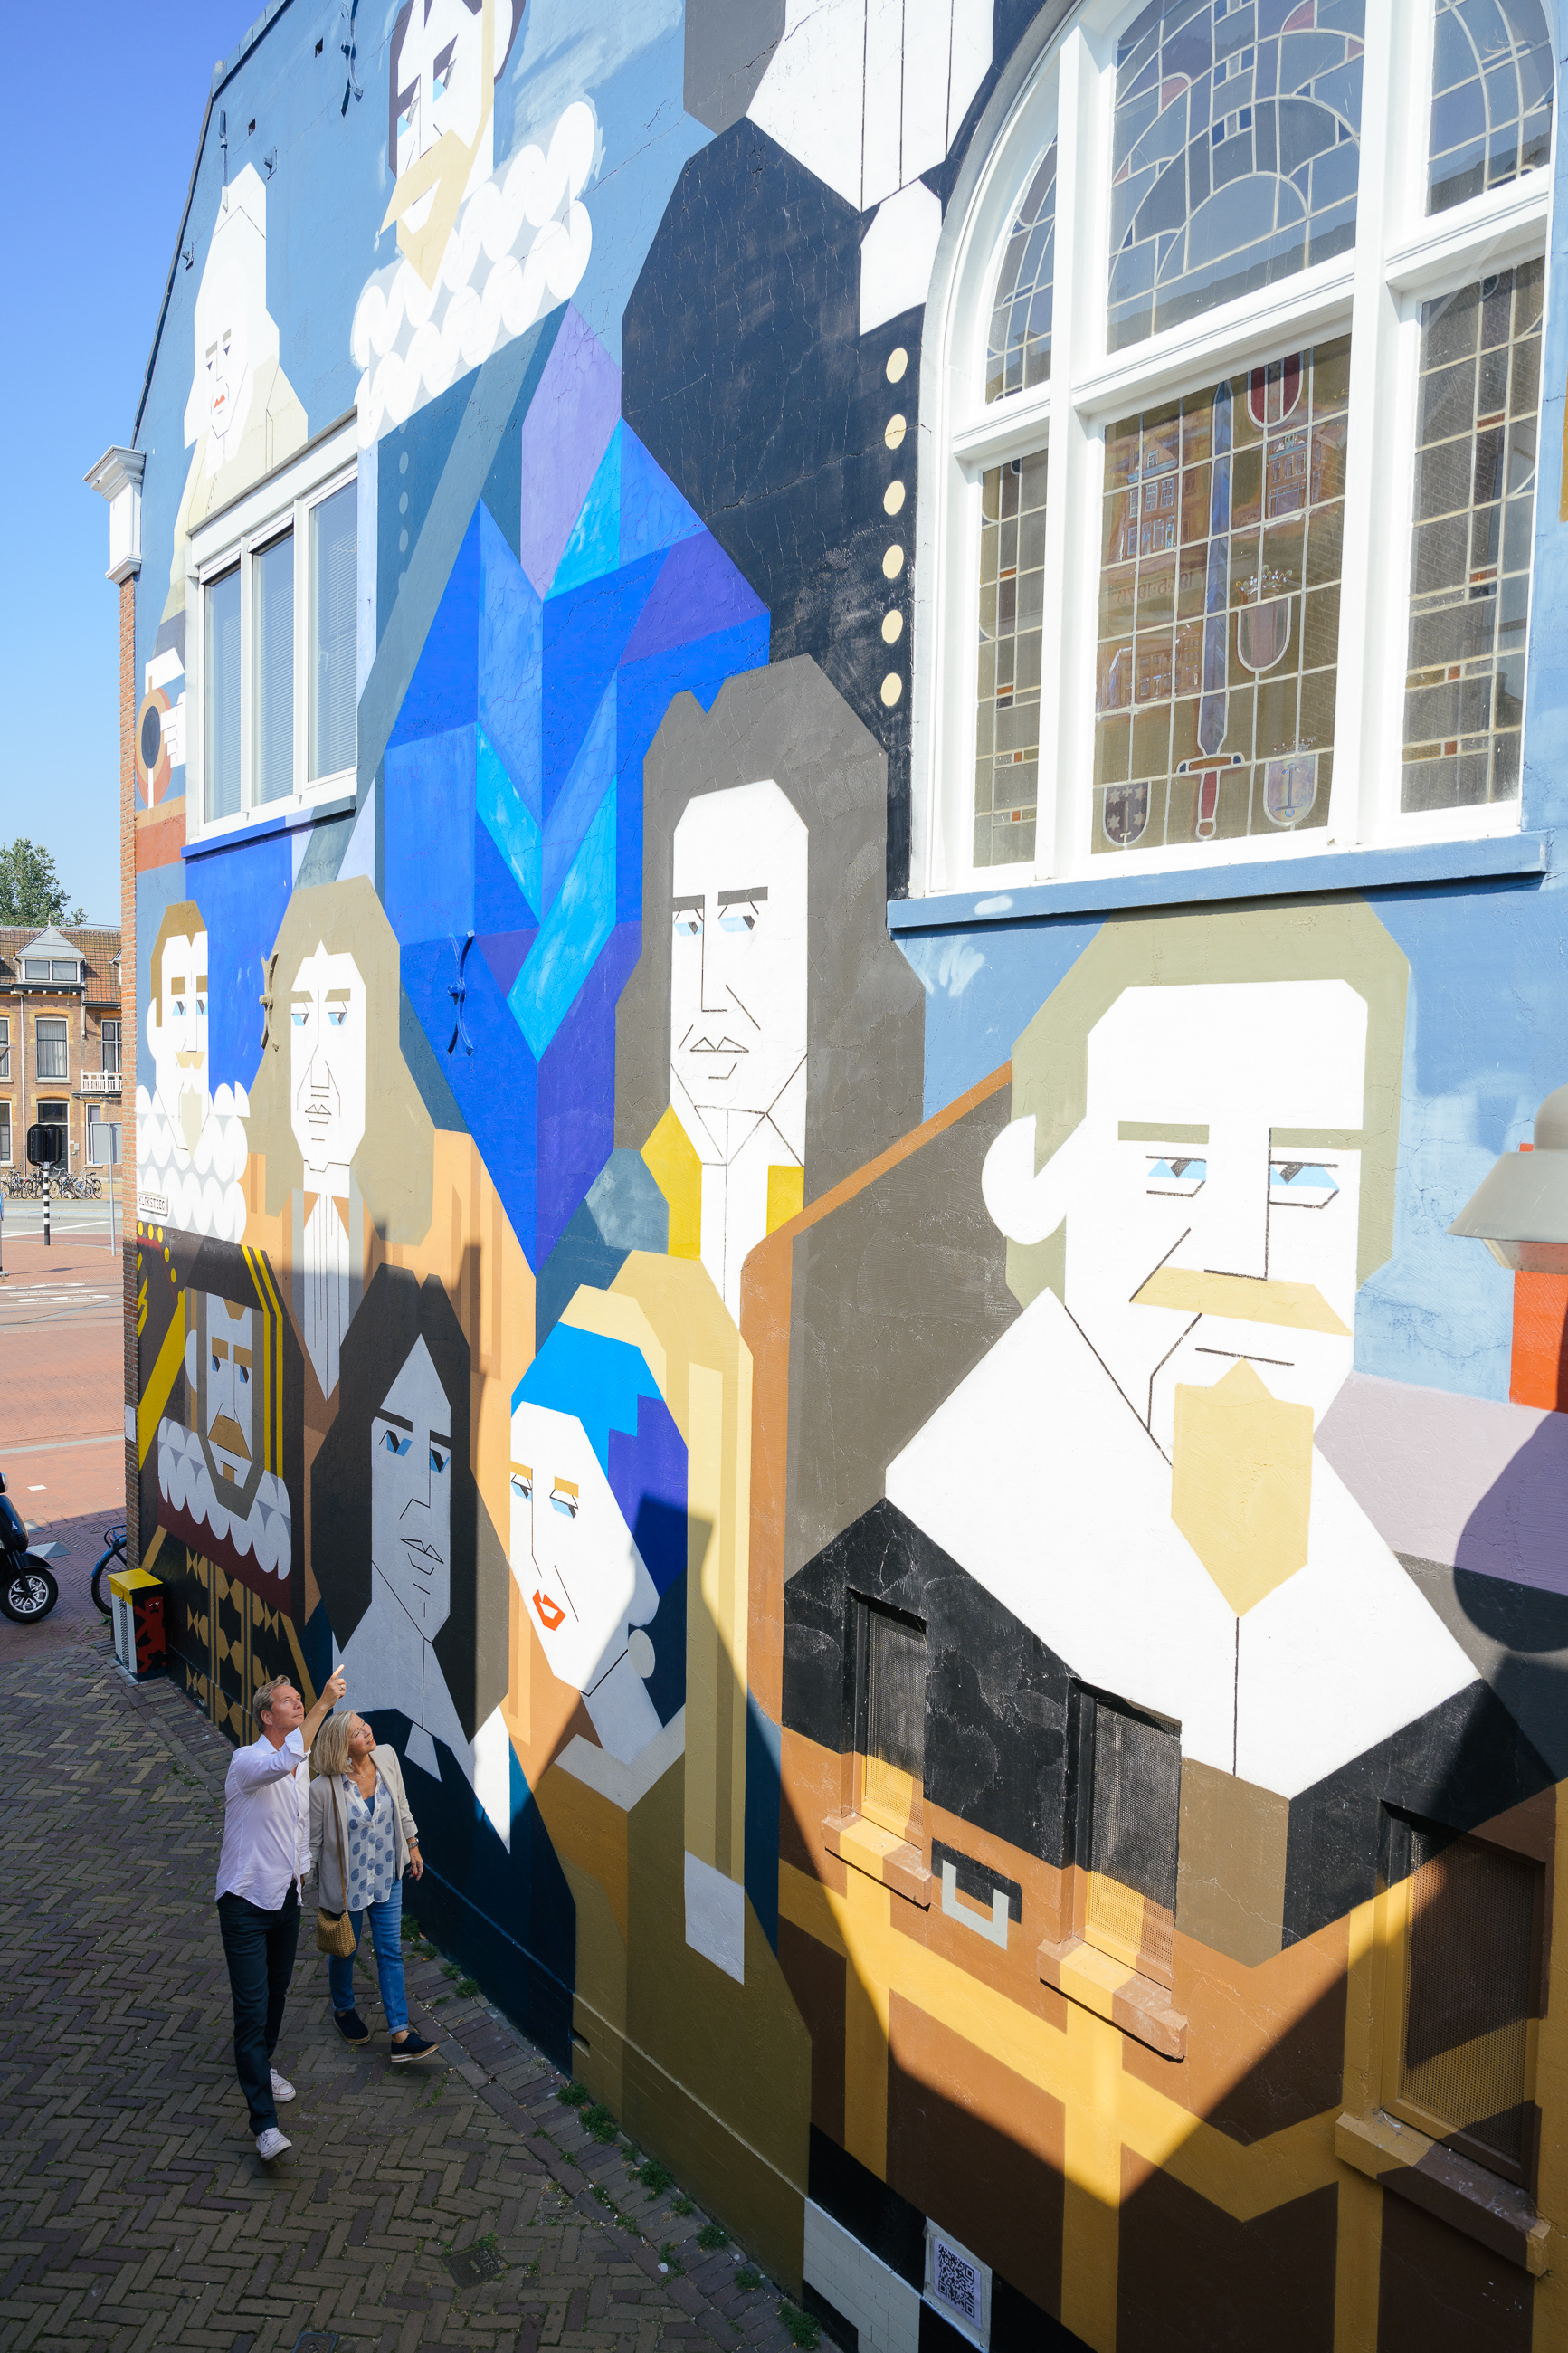 Street art in Delft by Jan Bijl